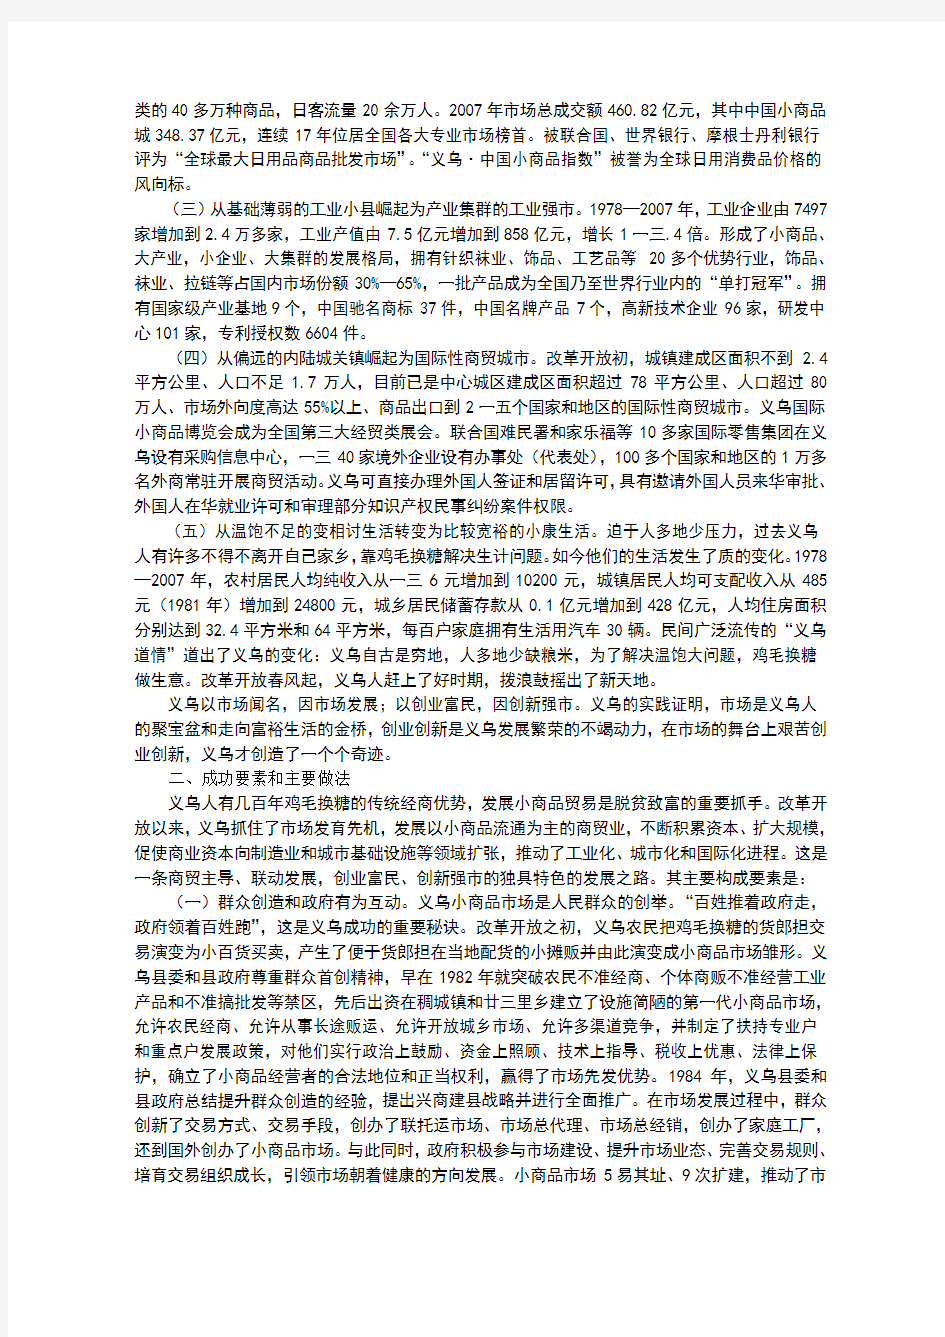 关于浙江省义乌市经济社会发展的调查